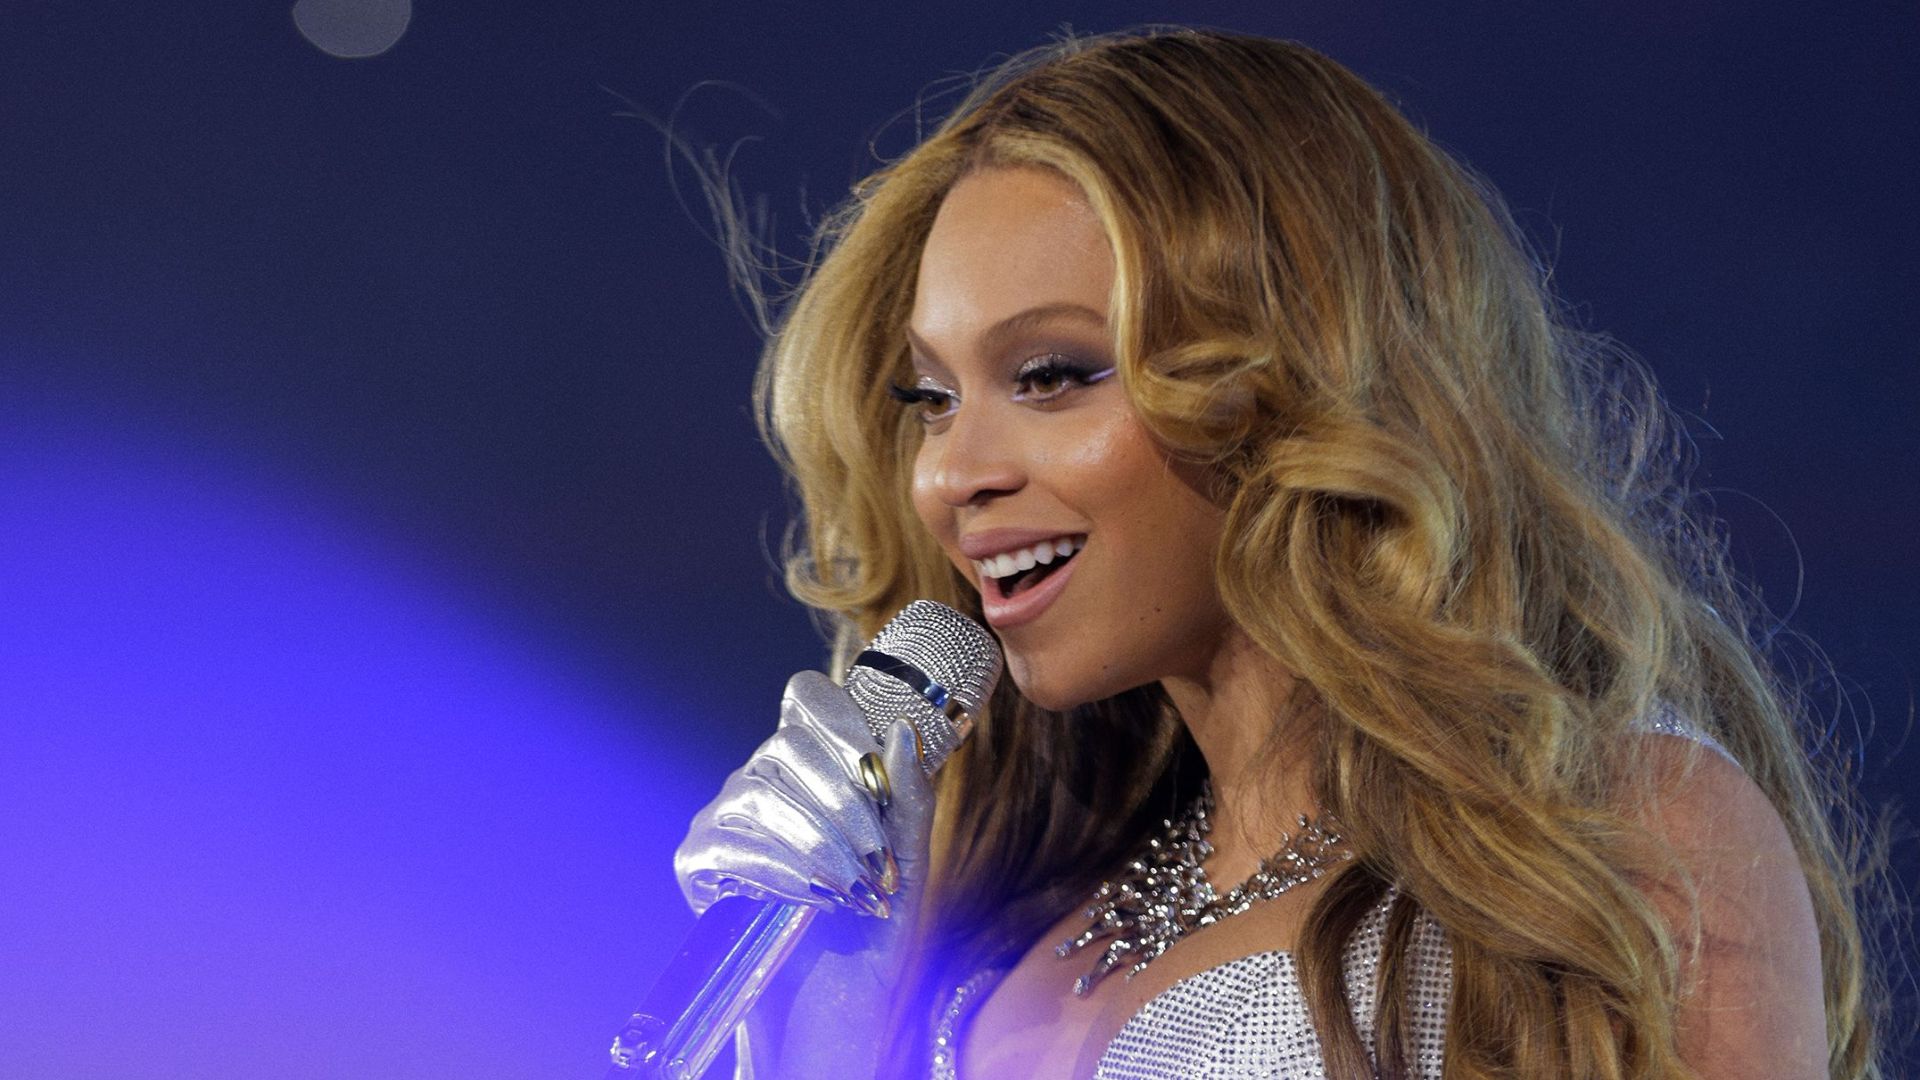 La demande pour le show de Beyoncé en France fait sensation sur Internet : « 400 000 personnes voulaient payer pour la voir »